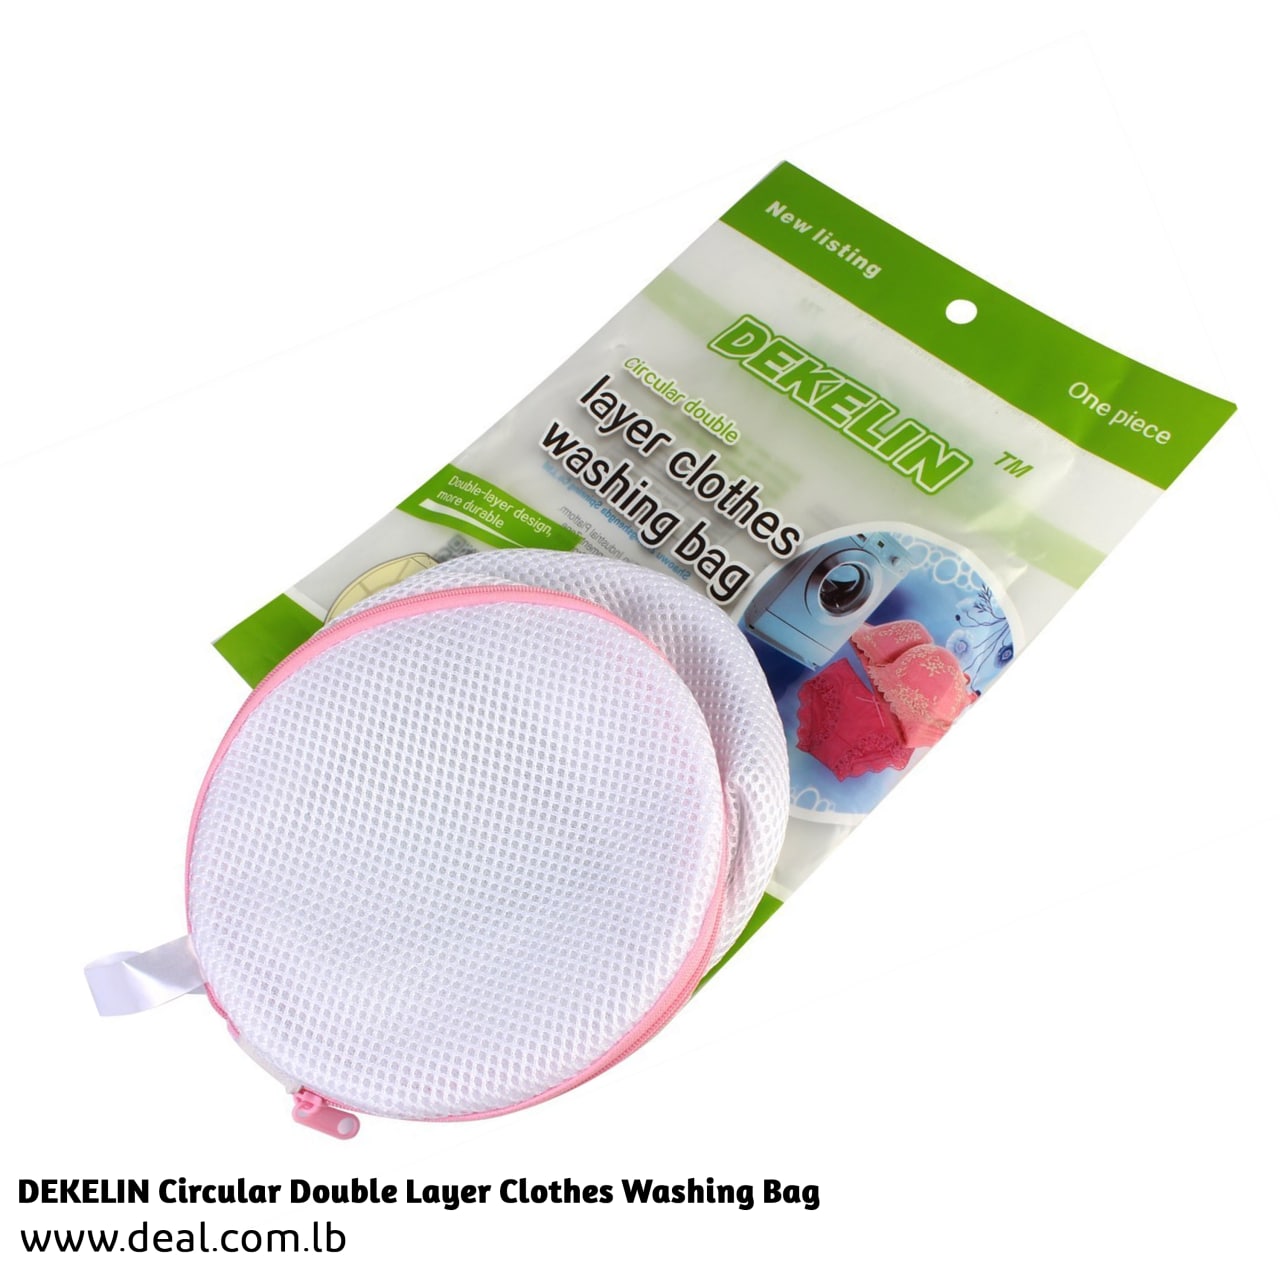 DEKELIN Circular Double Layer Clothes Washing Bag